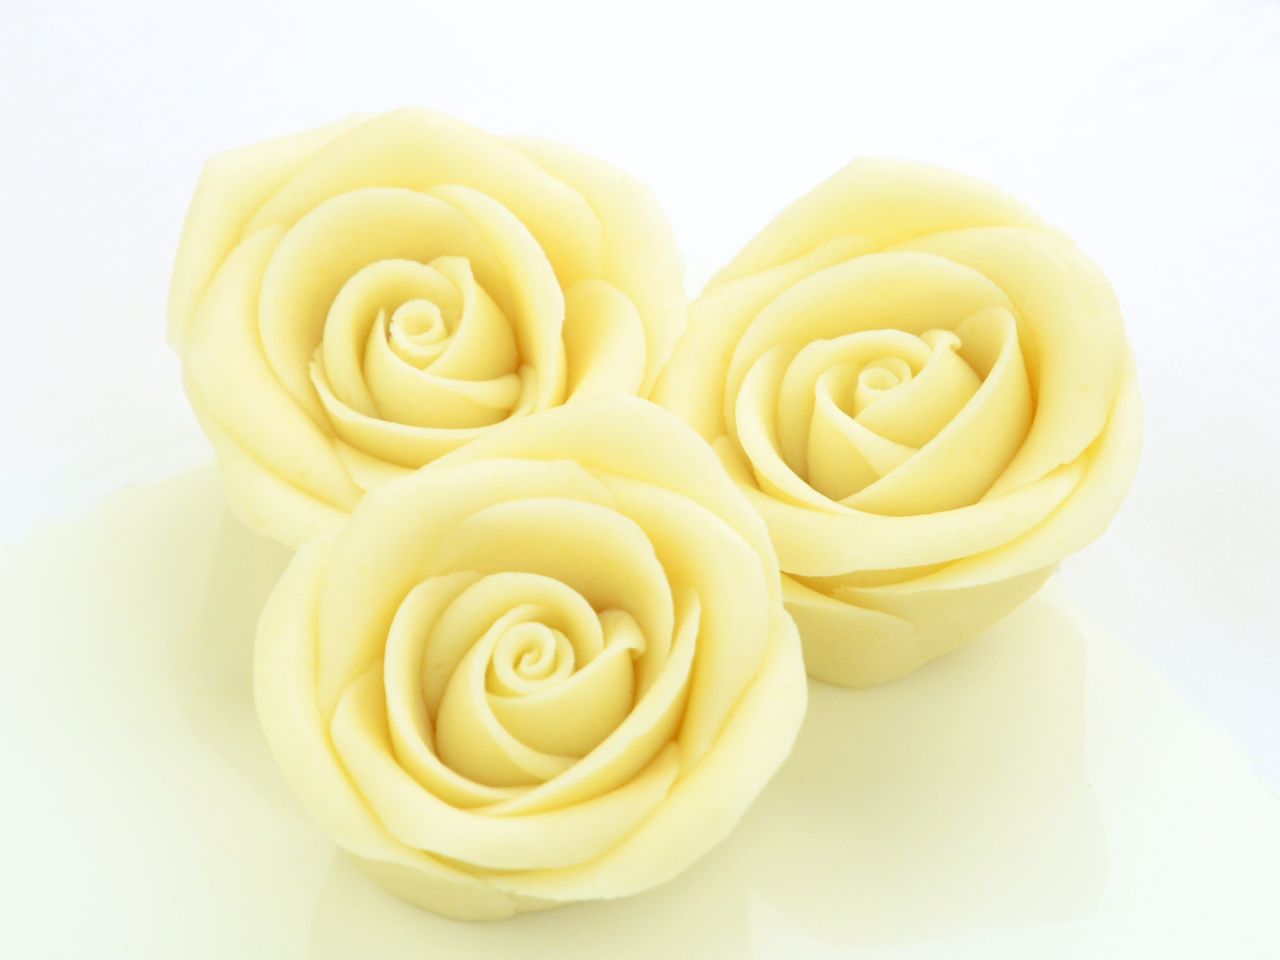 Große Marzipan-Rosen, Weiß, 2 Stück, 4,5 x 2,5 cm